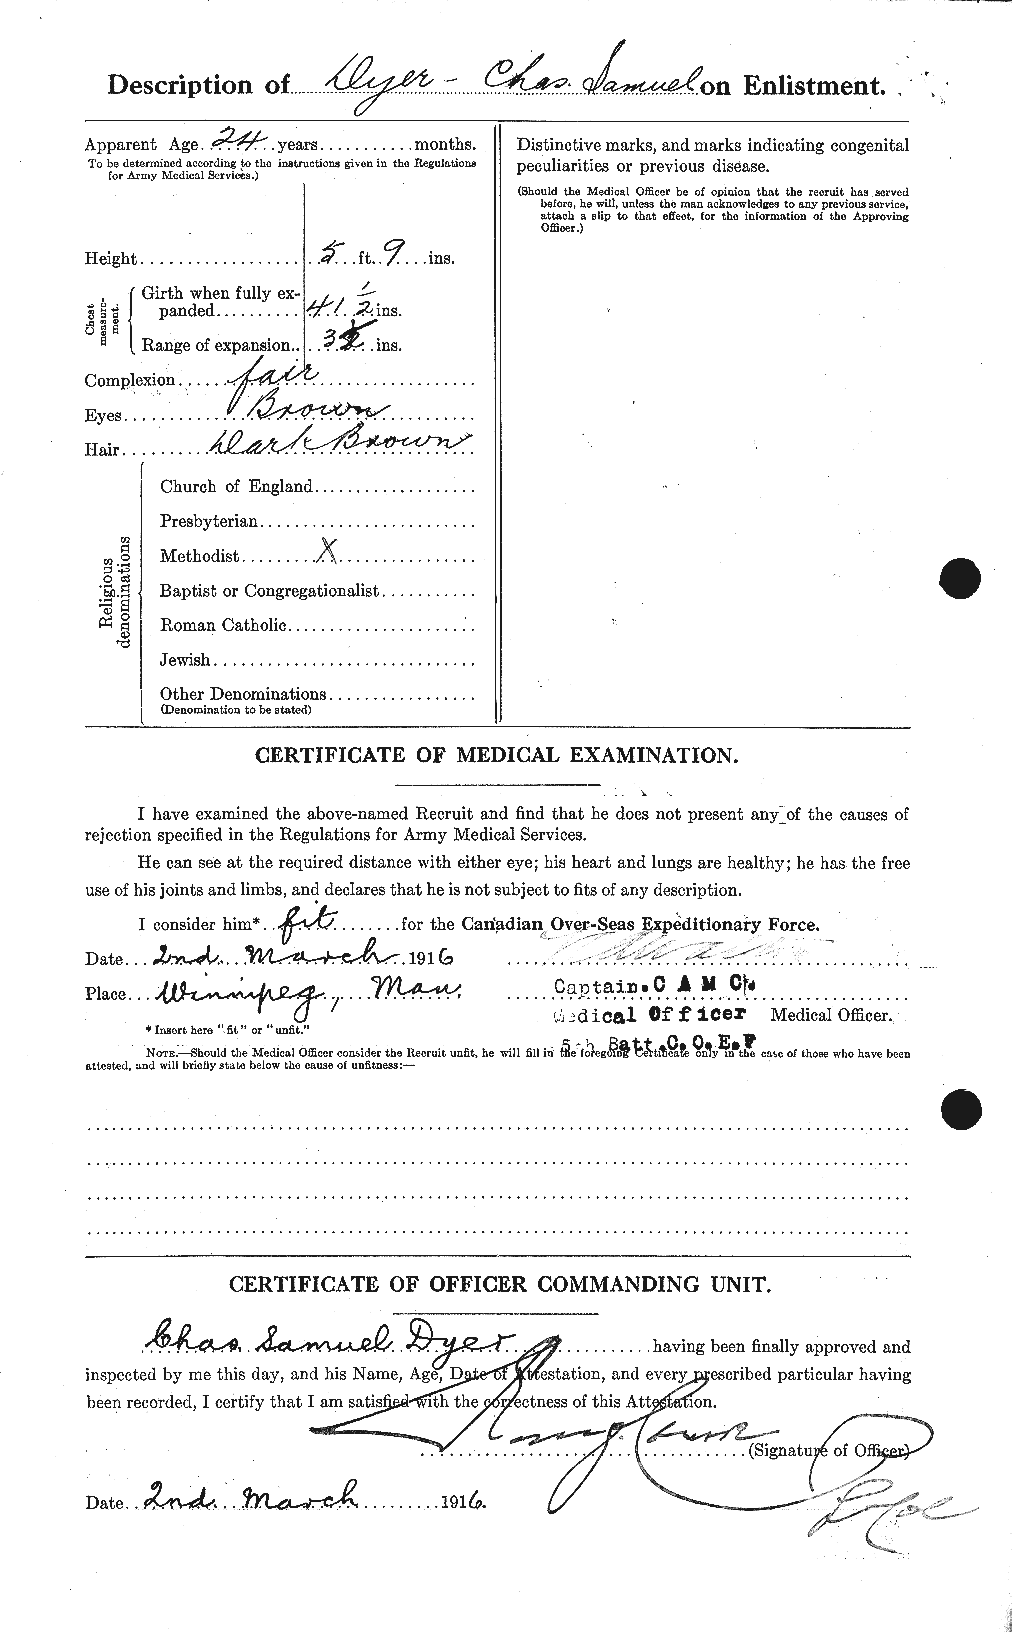 Dossiers du Personnel de la Première Guerre mondiale - CEC 305771b